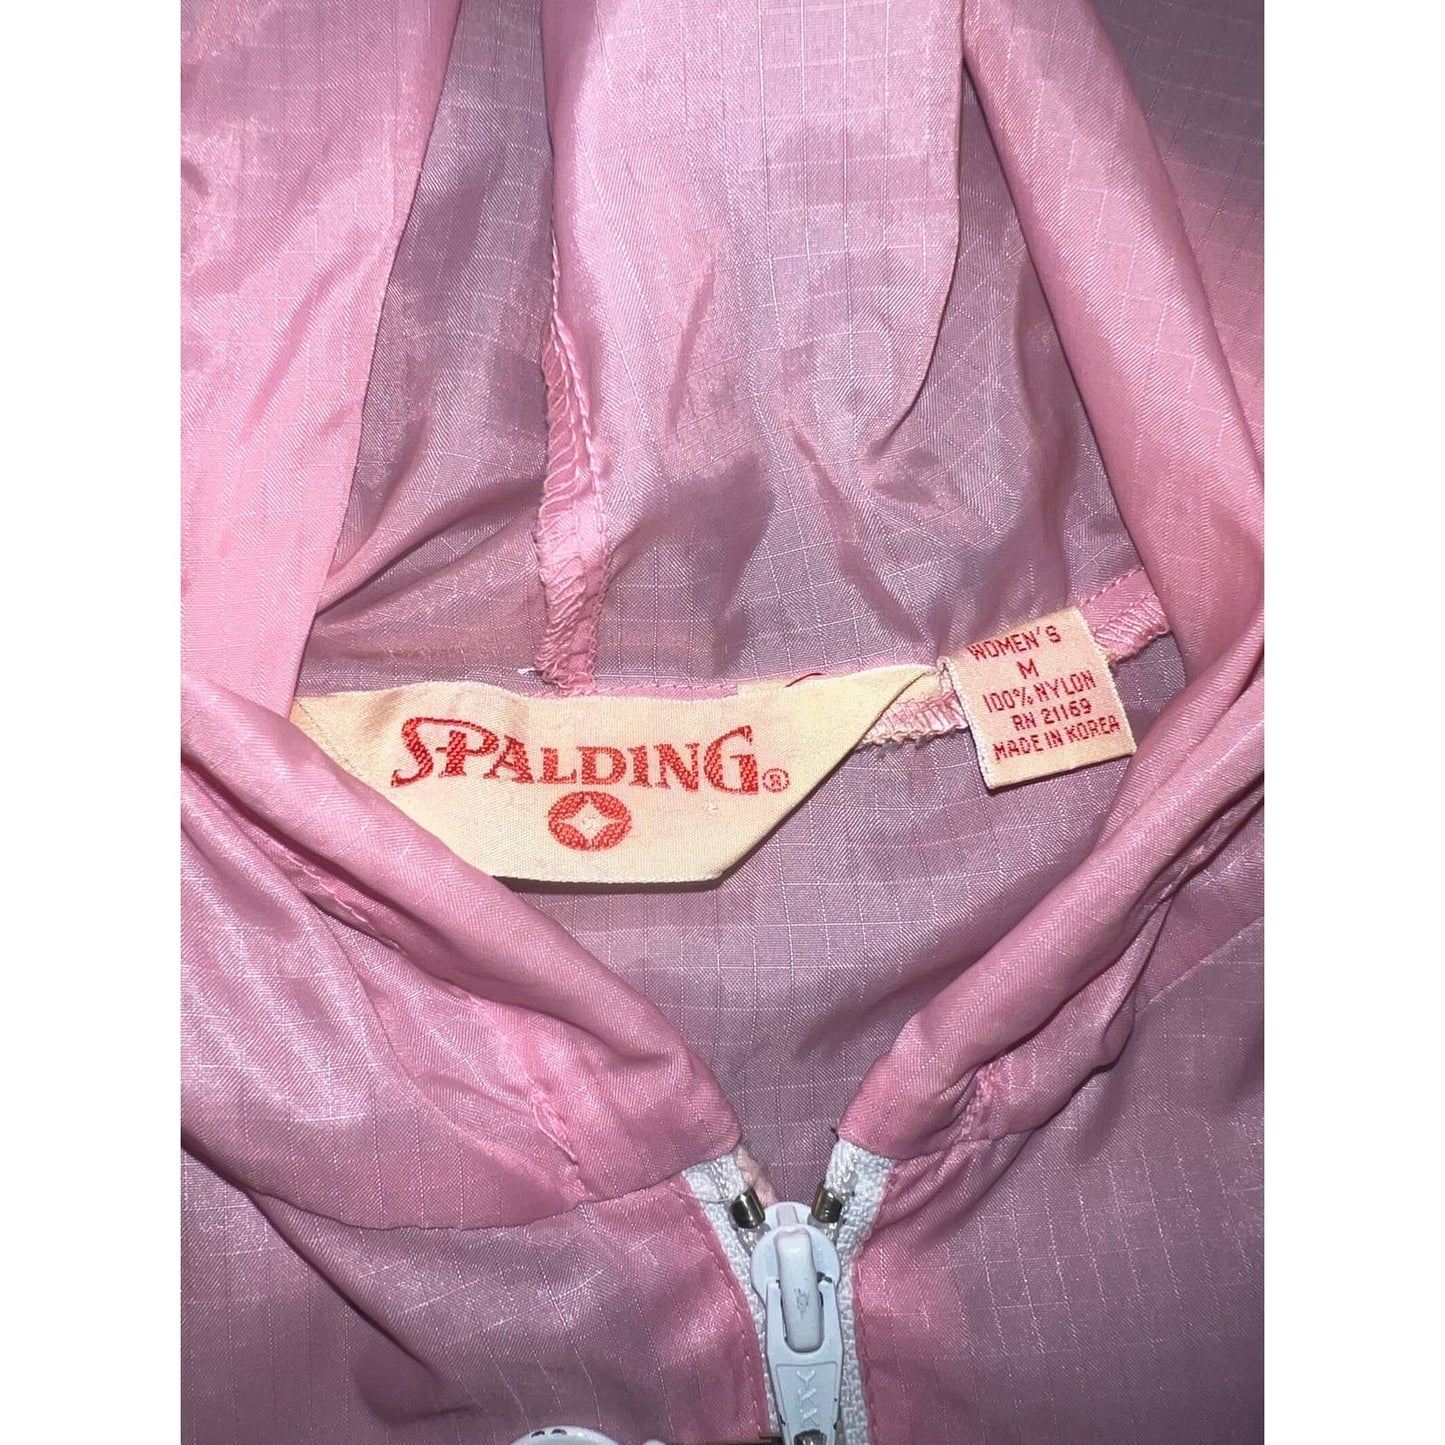 Vintage Spaulding Windbreaker 90’s pink